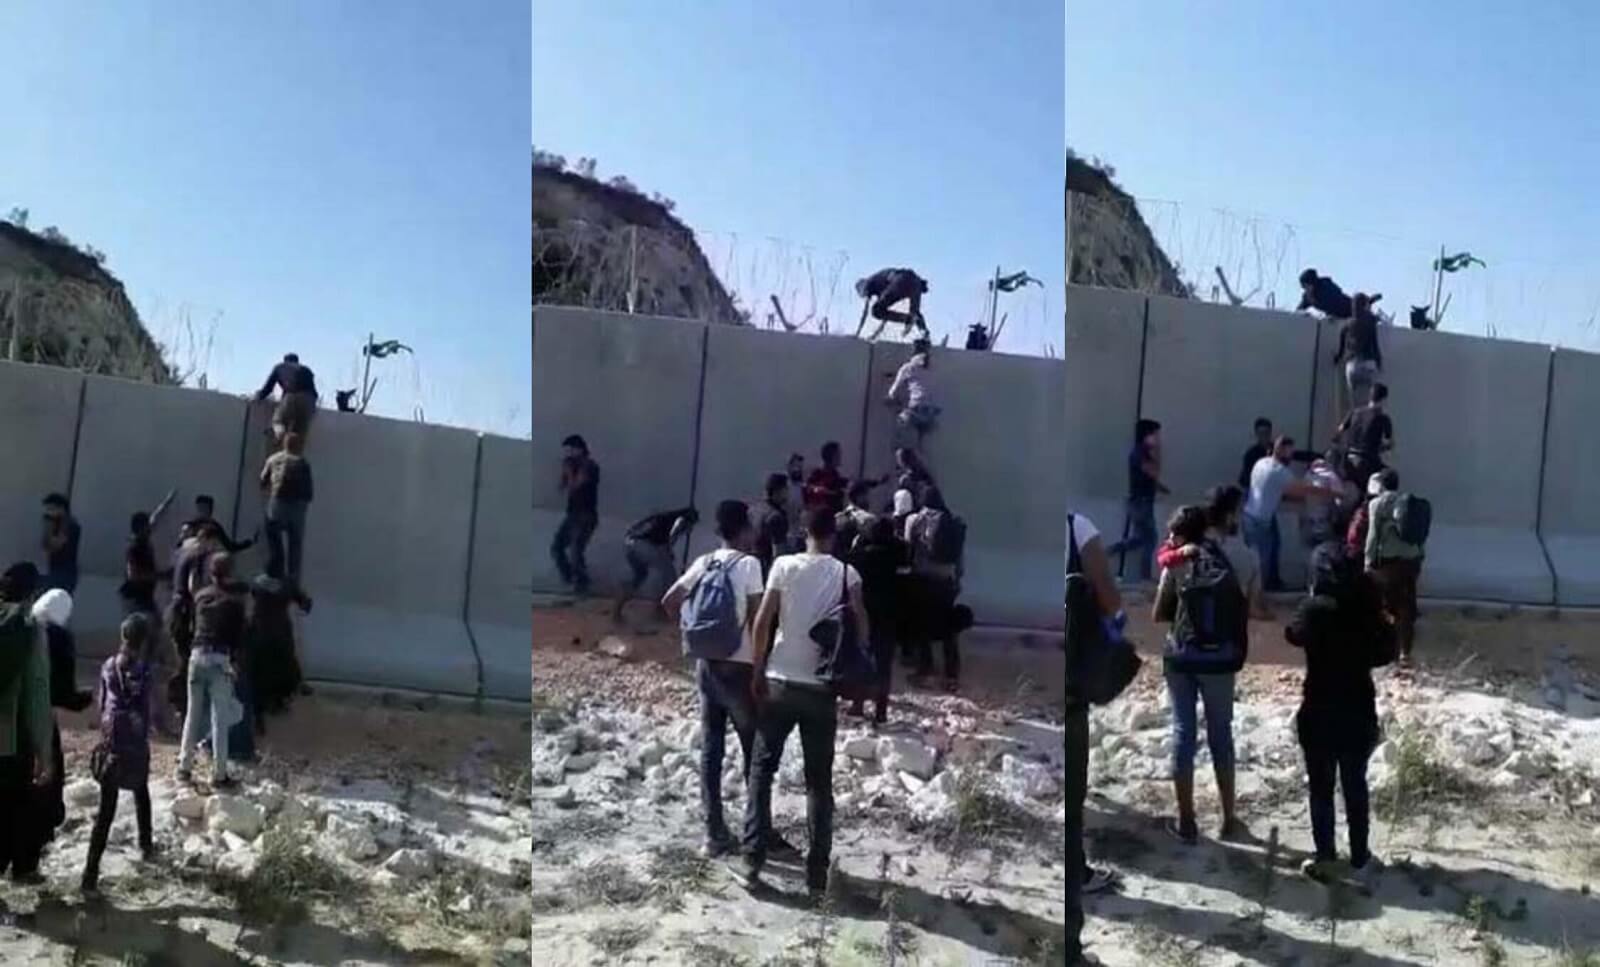 Videoda Sınırdaki Güvenlik Duvarını Aşarken Görüntülenen ve Afgan Sanılan Sığınmacılar - Malumatfuruş